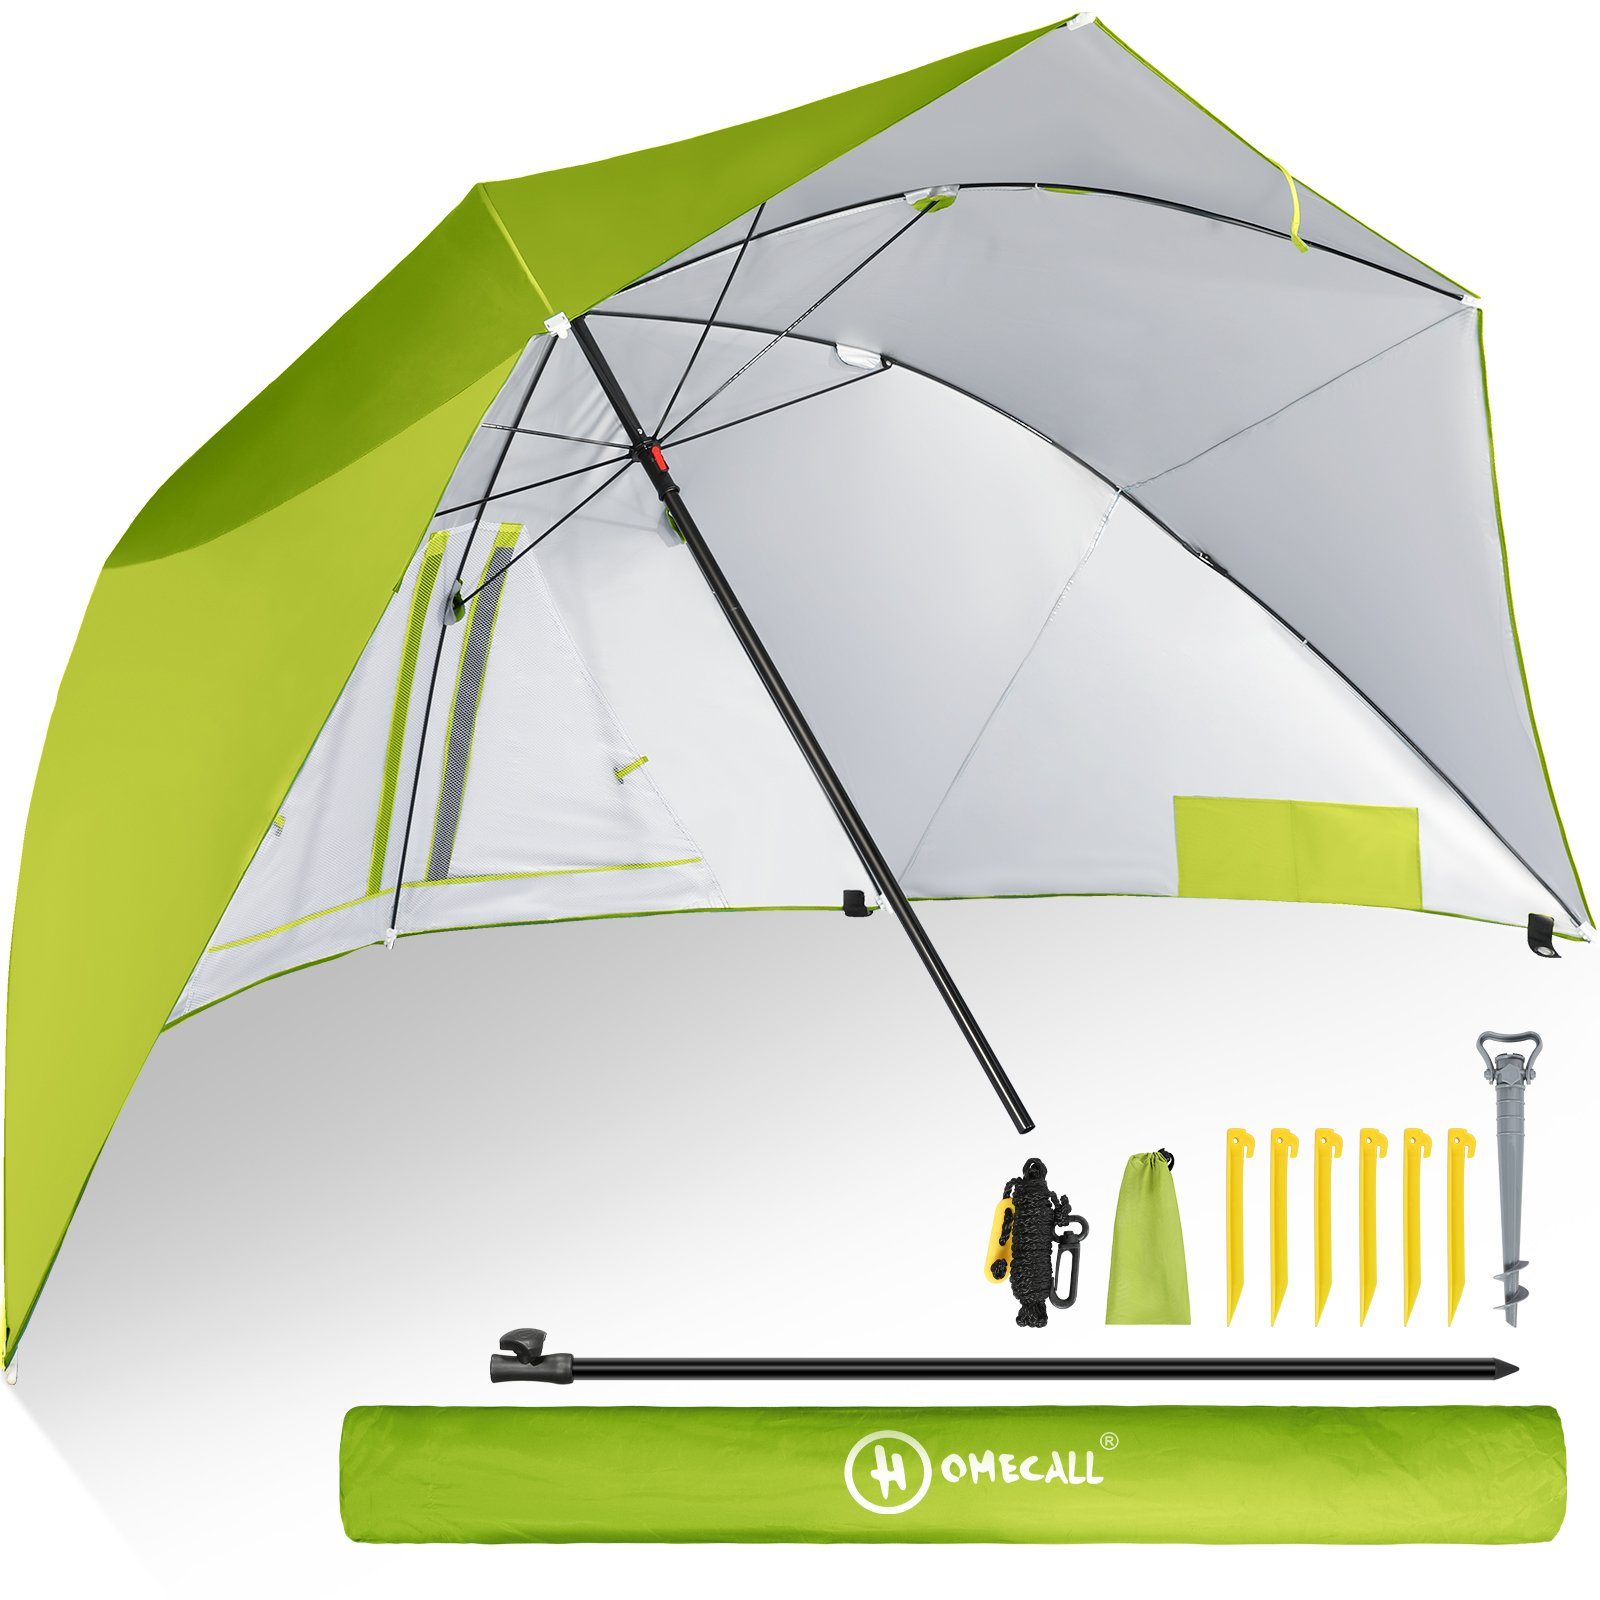 HOMECALL Strandmuschel mit umbrella system UV-resistentes 50+ Khaki, Umfunktionieren zum Sonnenschirm Strandschirm, für 2-3 Personen hellgrün